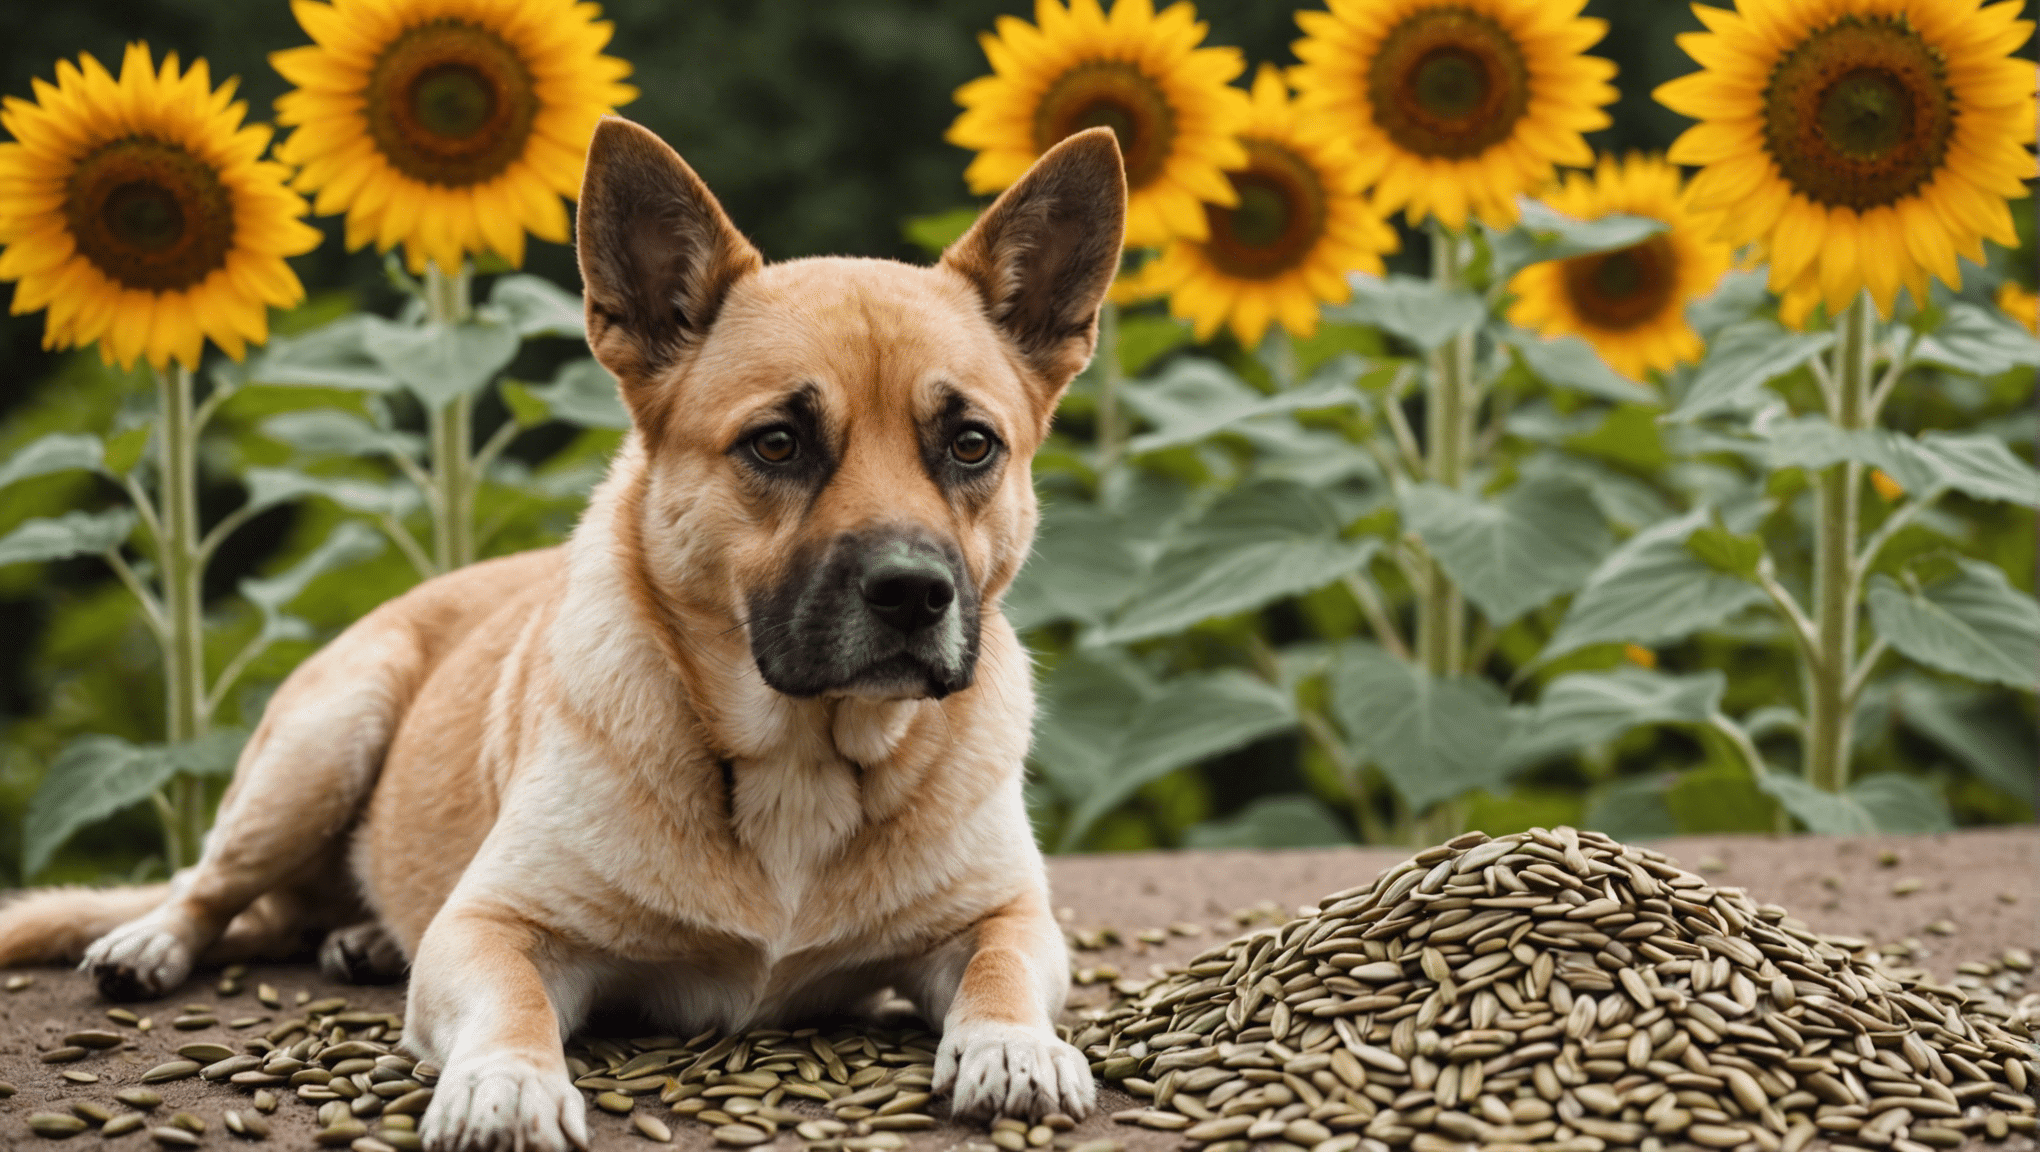 zjistěte, zda jsou slunečnicová semínka pro psy bezpečná, a dozvíte se o možných rizicích a výhodách pro vašeho psího společníka.